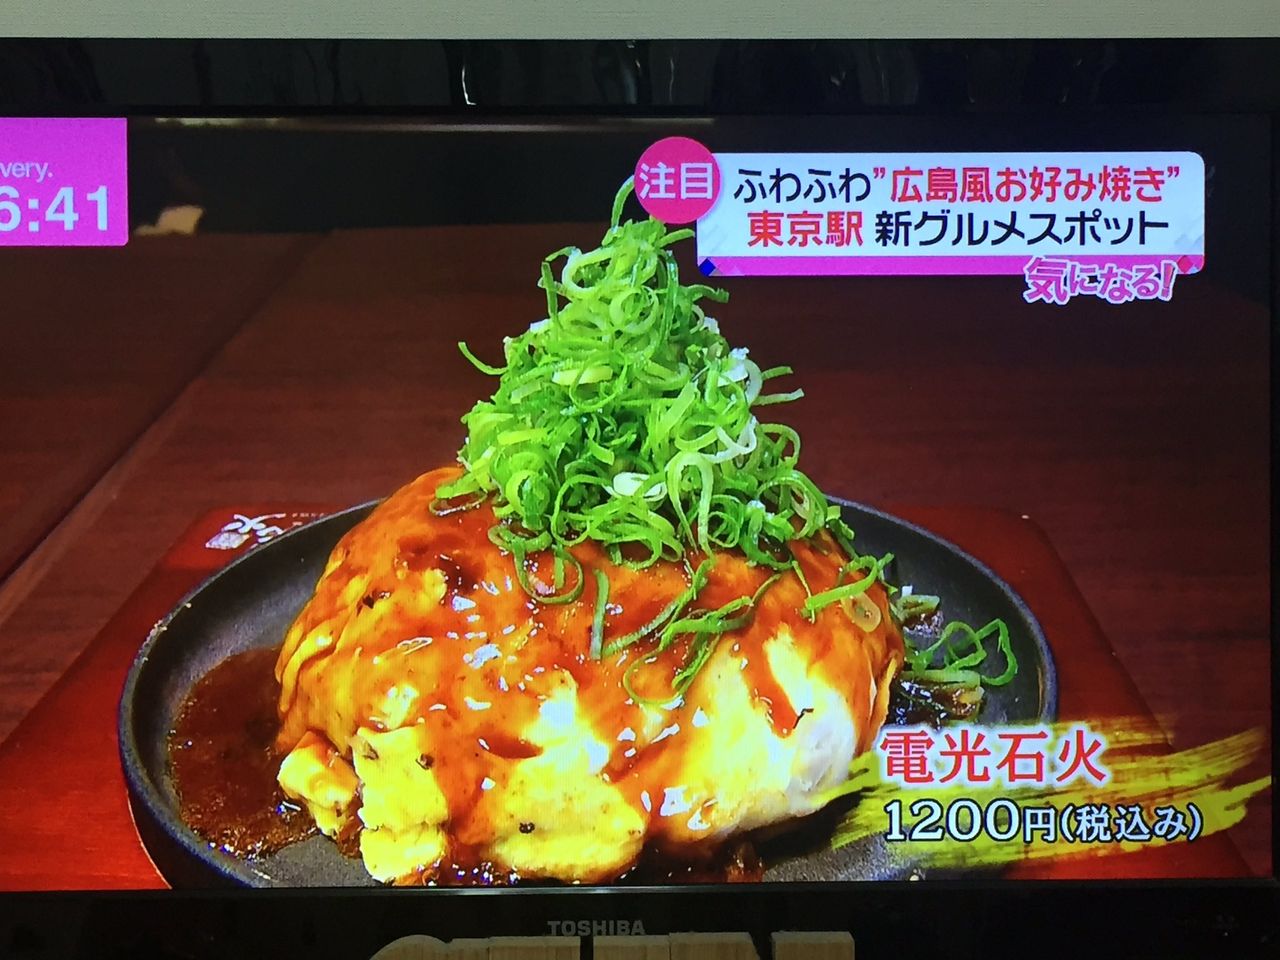 キタ あの広島のお好み焼きが お好み焼き 電光石火 東京 食い食いブログ